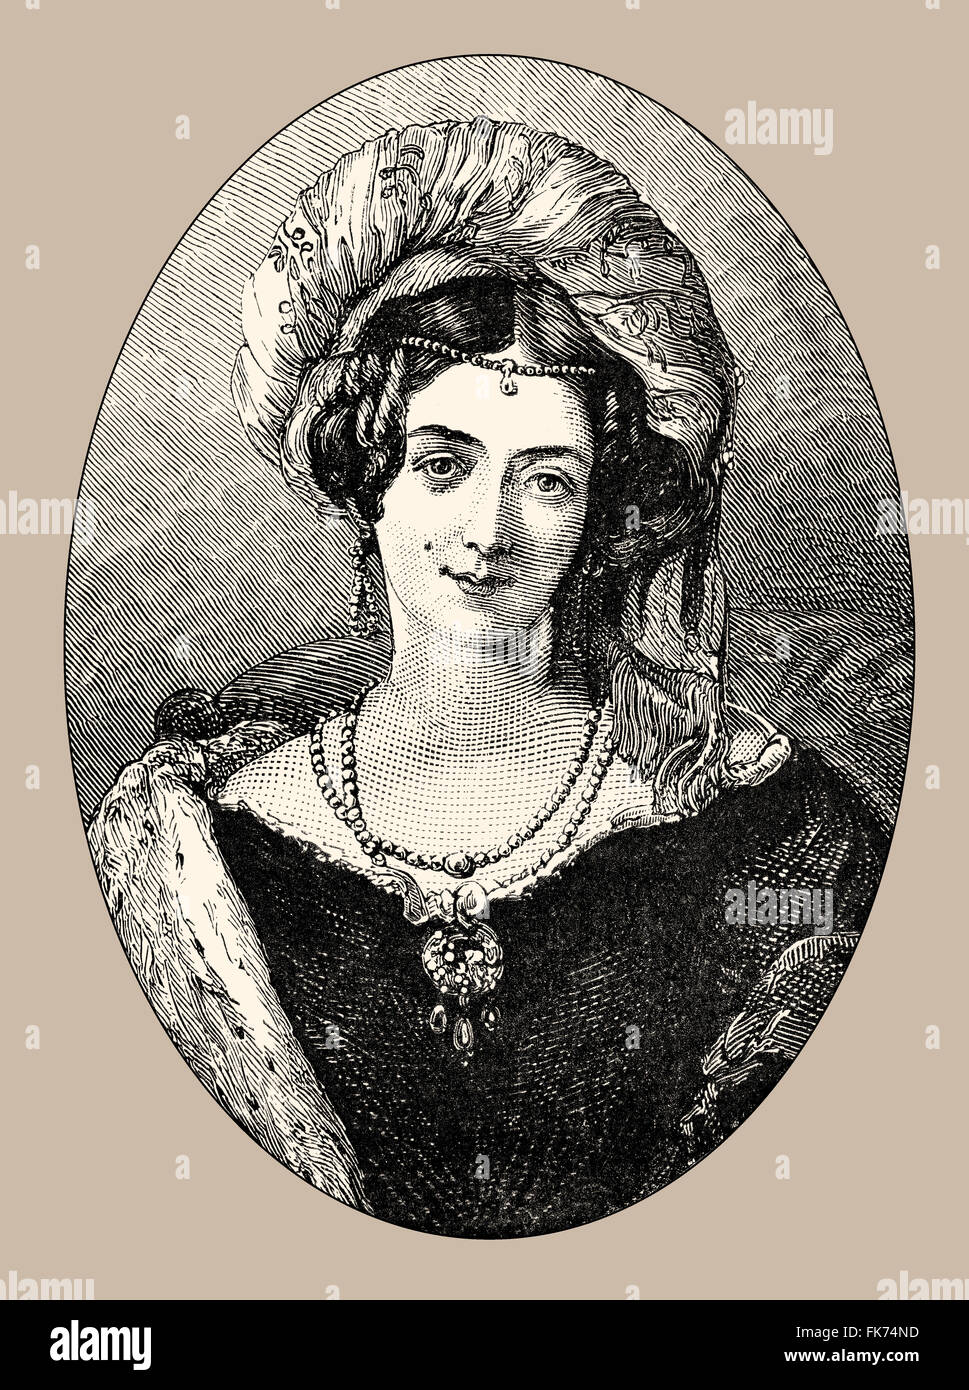 María Luisa, la princesa Victoria de Sajonia-Coburgo-Saalfeld, duquesa de Kent; 1786-1861, una princesa alemana y la madre de la Reina Vi Foto de stock